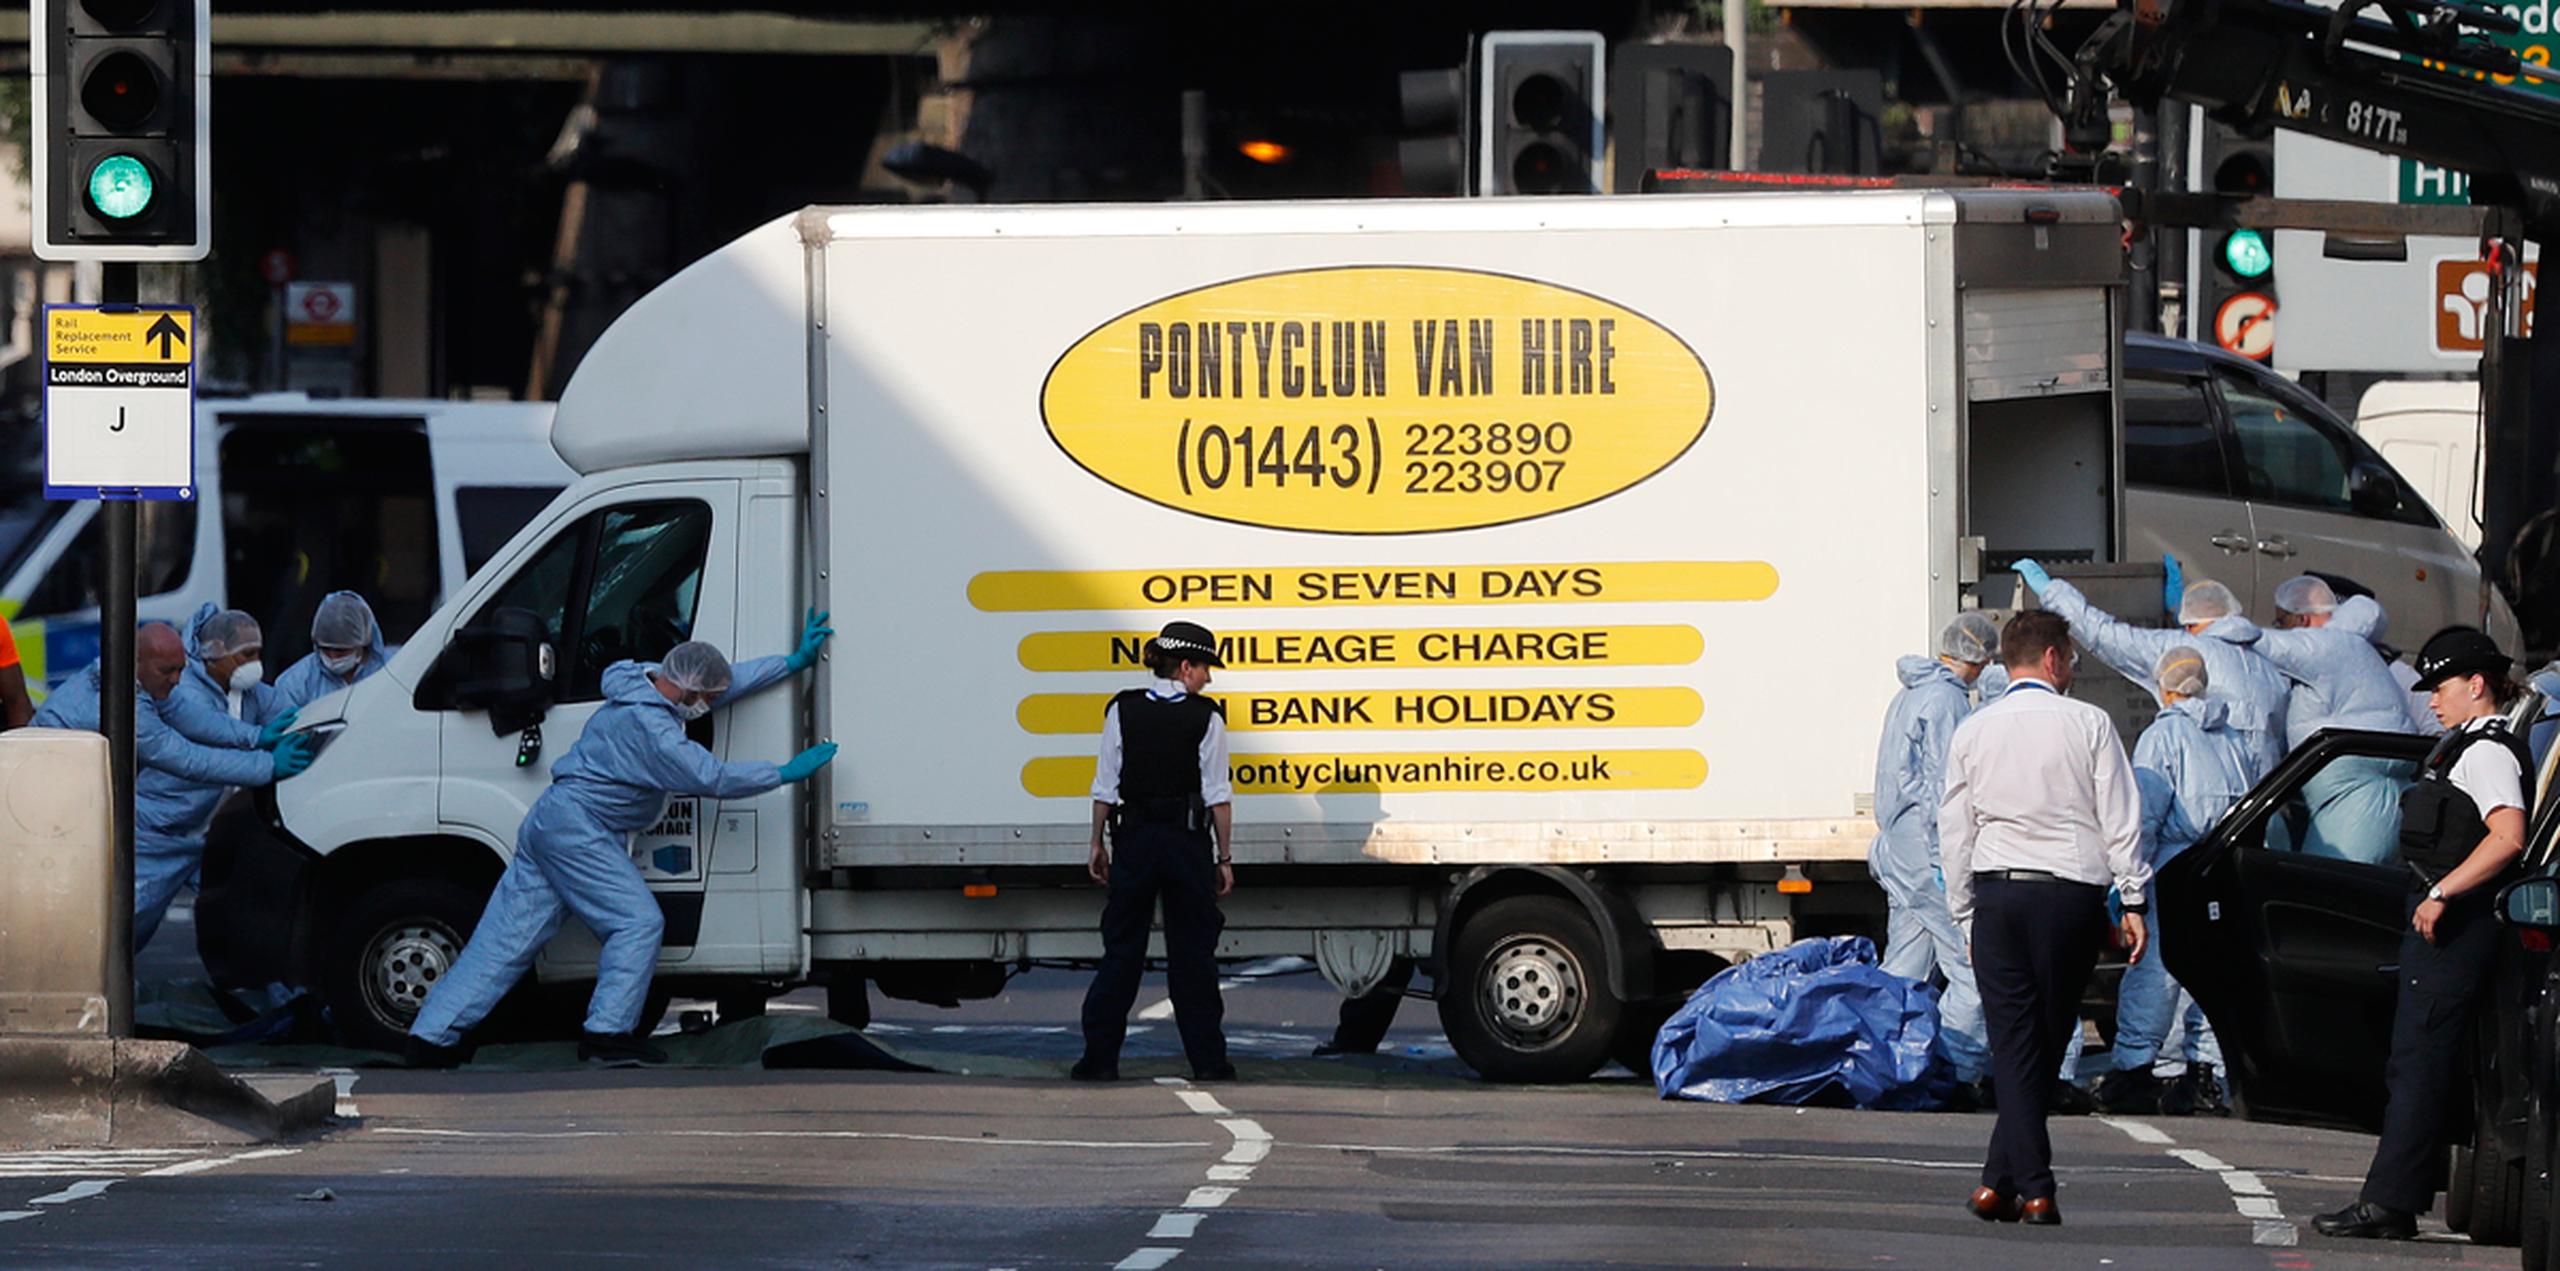 Personal forense mueve la camioneta en el Finsbury Park en el norte de Londres, donde un vehículo atropelló a varios peatones en el norte de Londres el lunes 19 de junio de 2017. (AP/Frank Augstein)